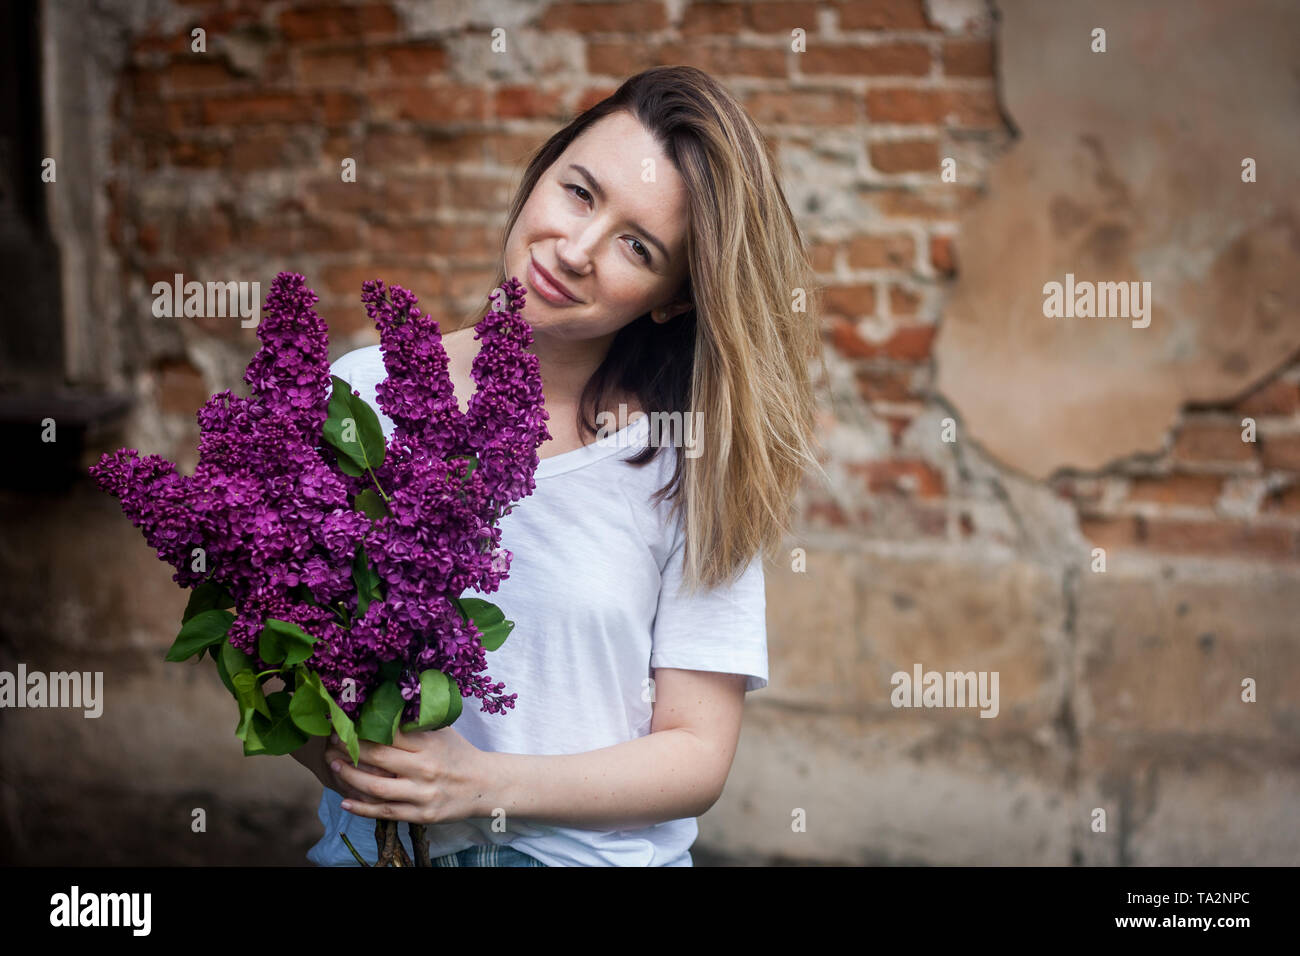 Stilvolle Frau, die eine lebendige Haufen lila Blüten. Grunge Red brick wall Hintergrund. Stockfoto